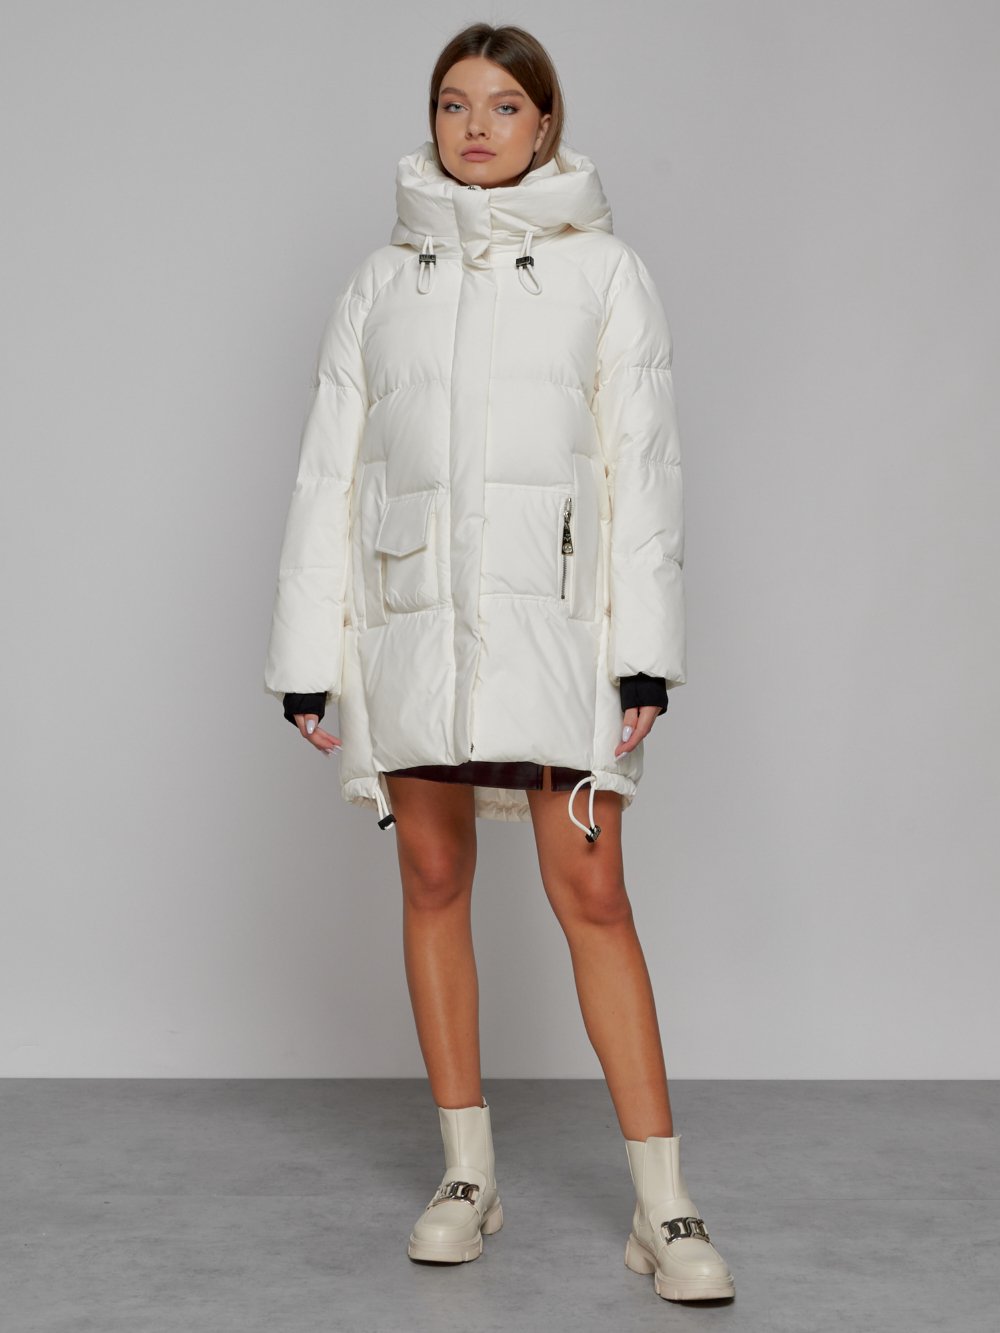 Купить куртку женскую оптом от производителя недорого в Москве 51122Bl 1